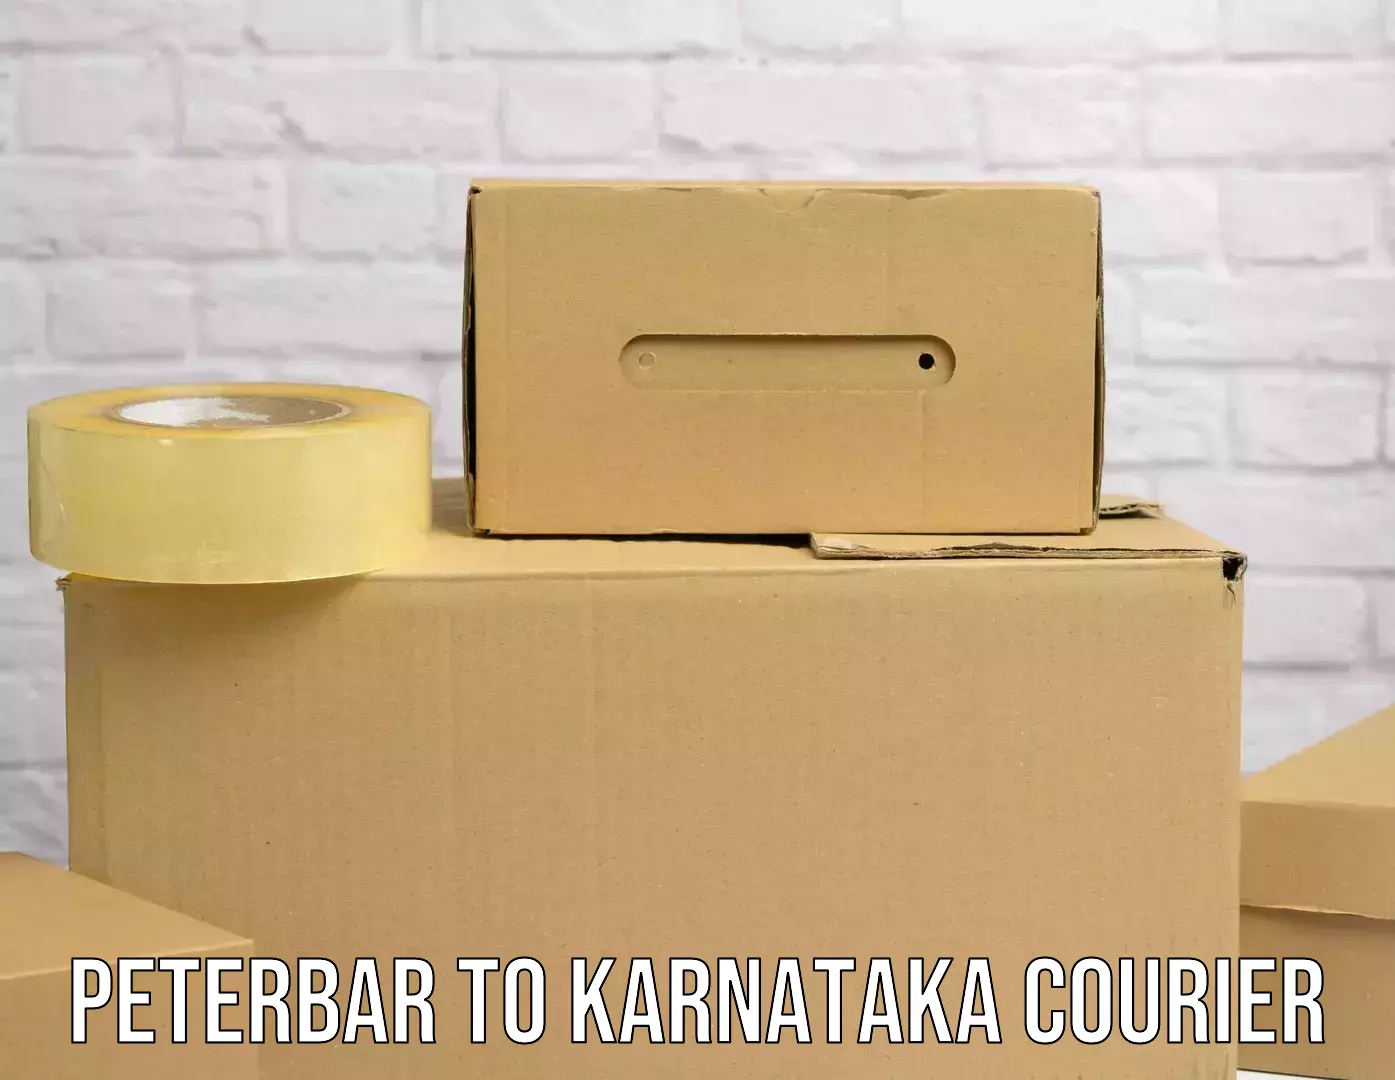 Advanced shipping technology Peterbar to Karnataka